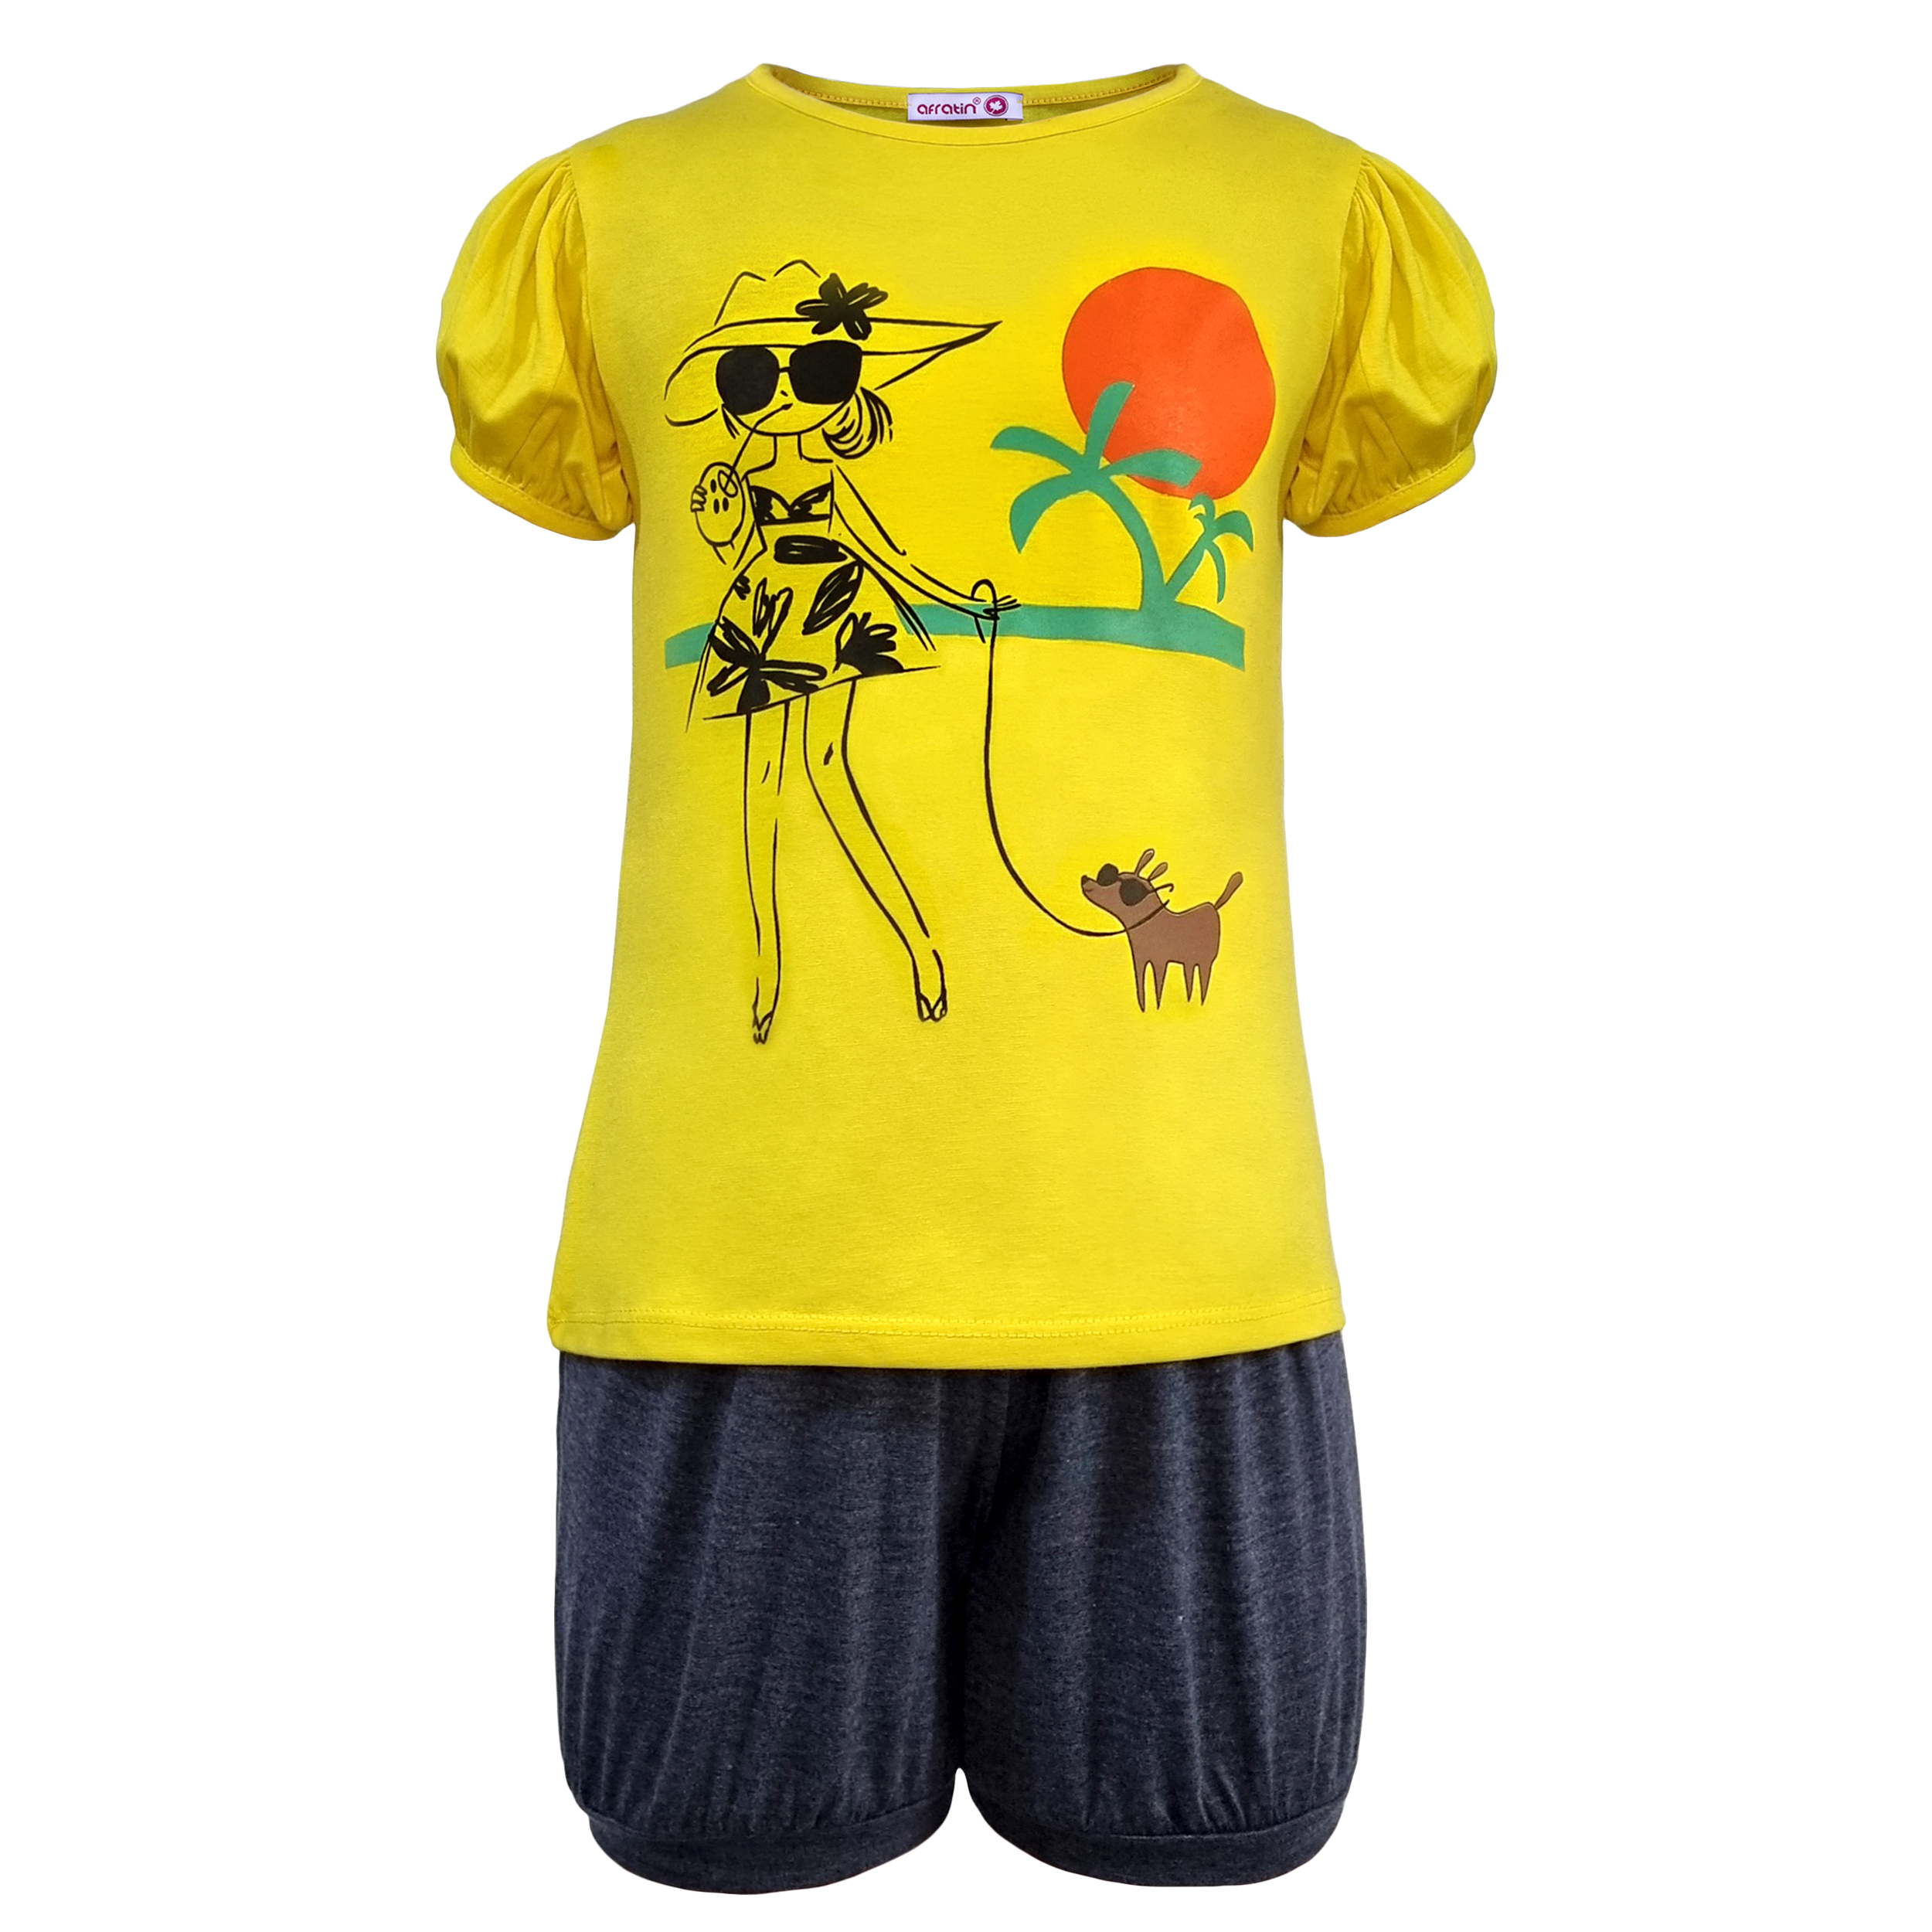 ست تی شرت و شلوارک دخترانه افراتین مدل دختر ساحلی رنگ زرد